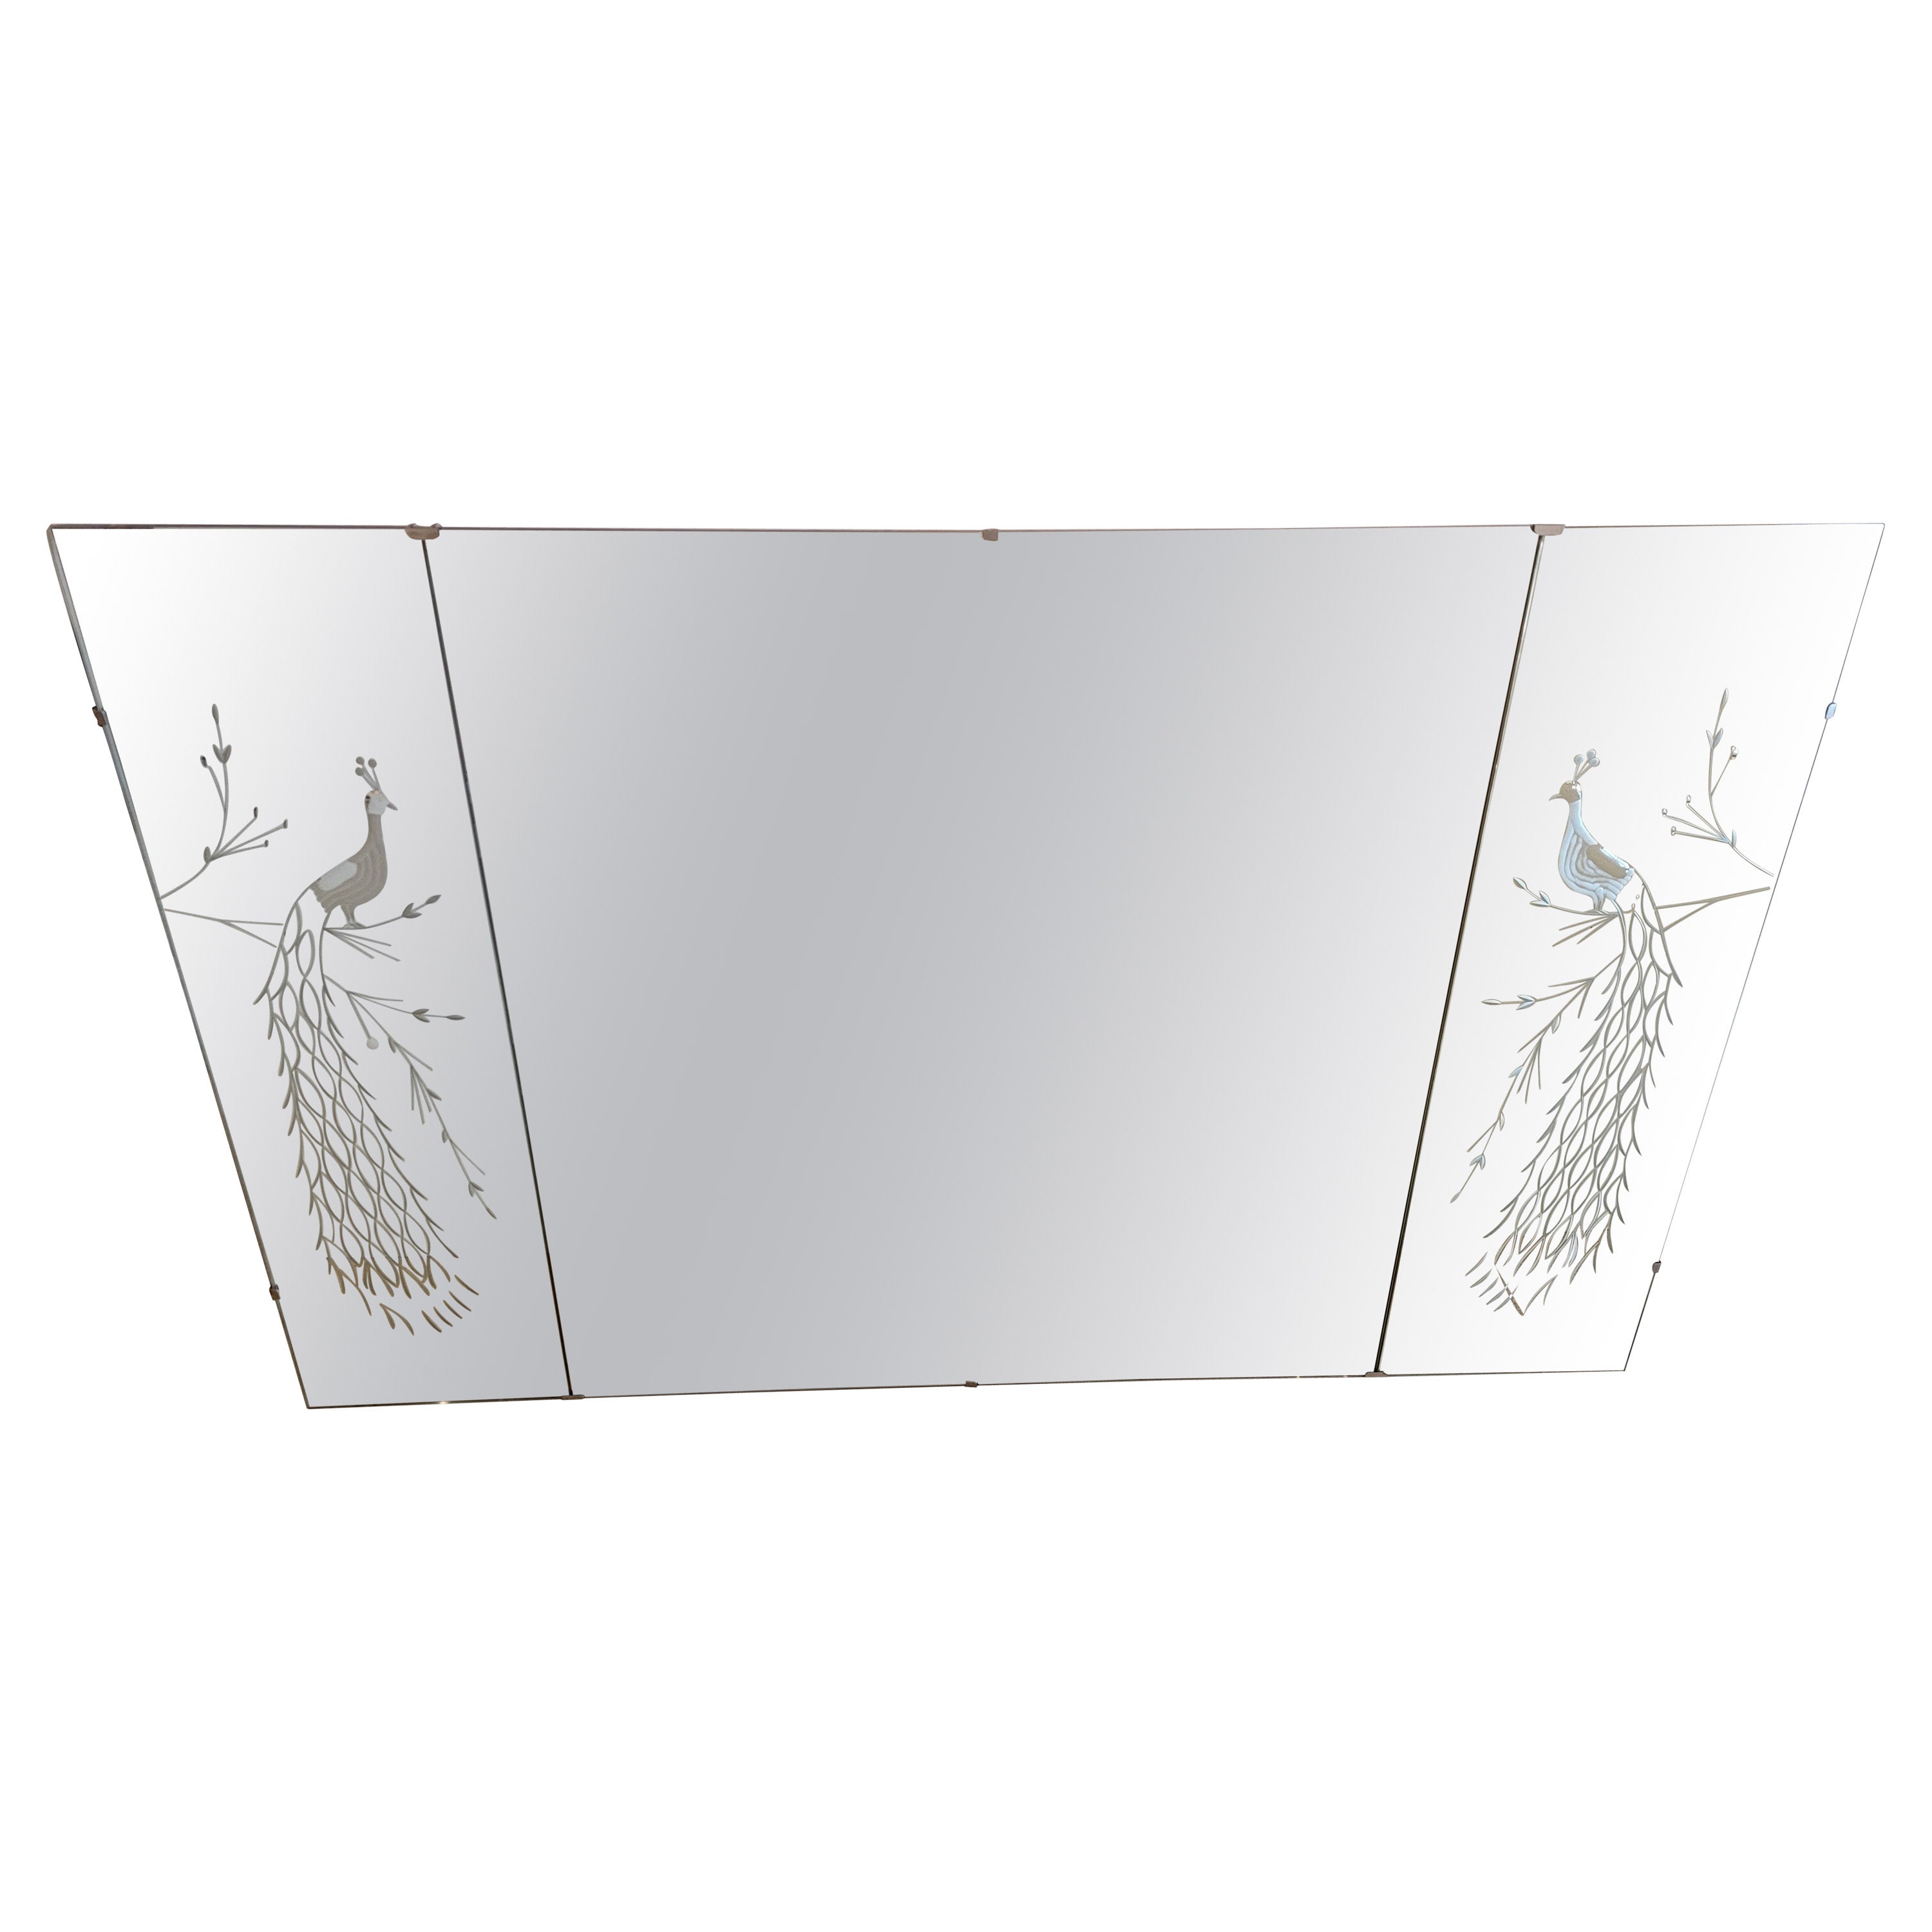 Monumental et charmant miroir horizontal à 3 panneaux avec paons gravés